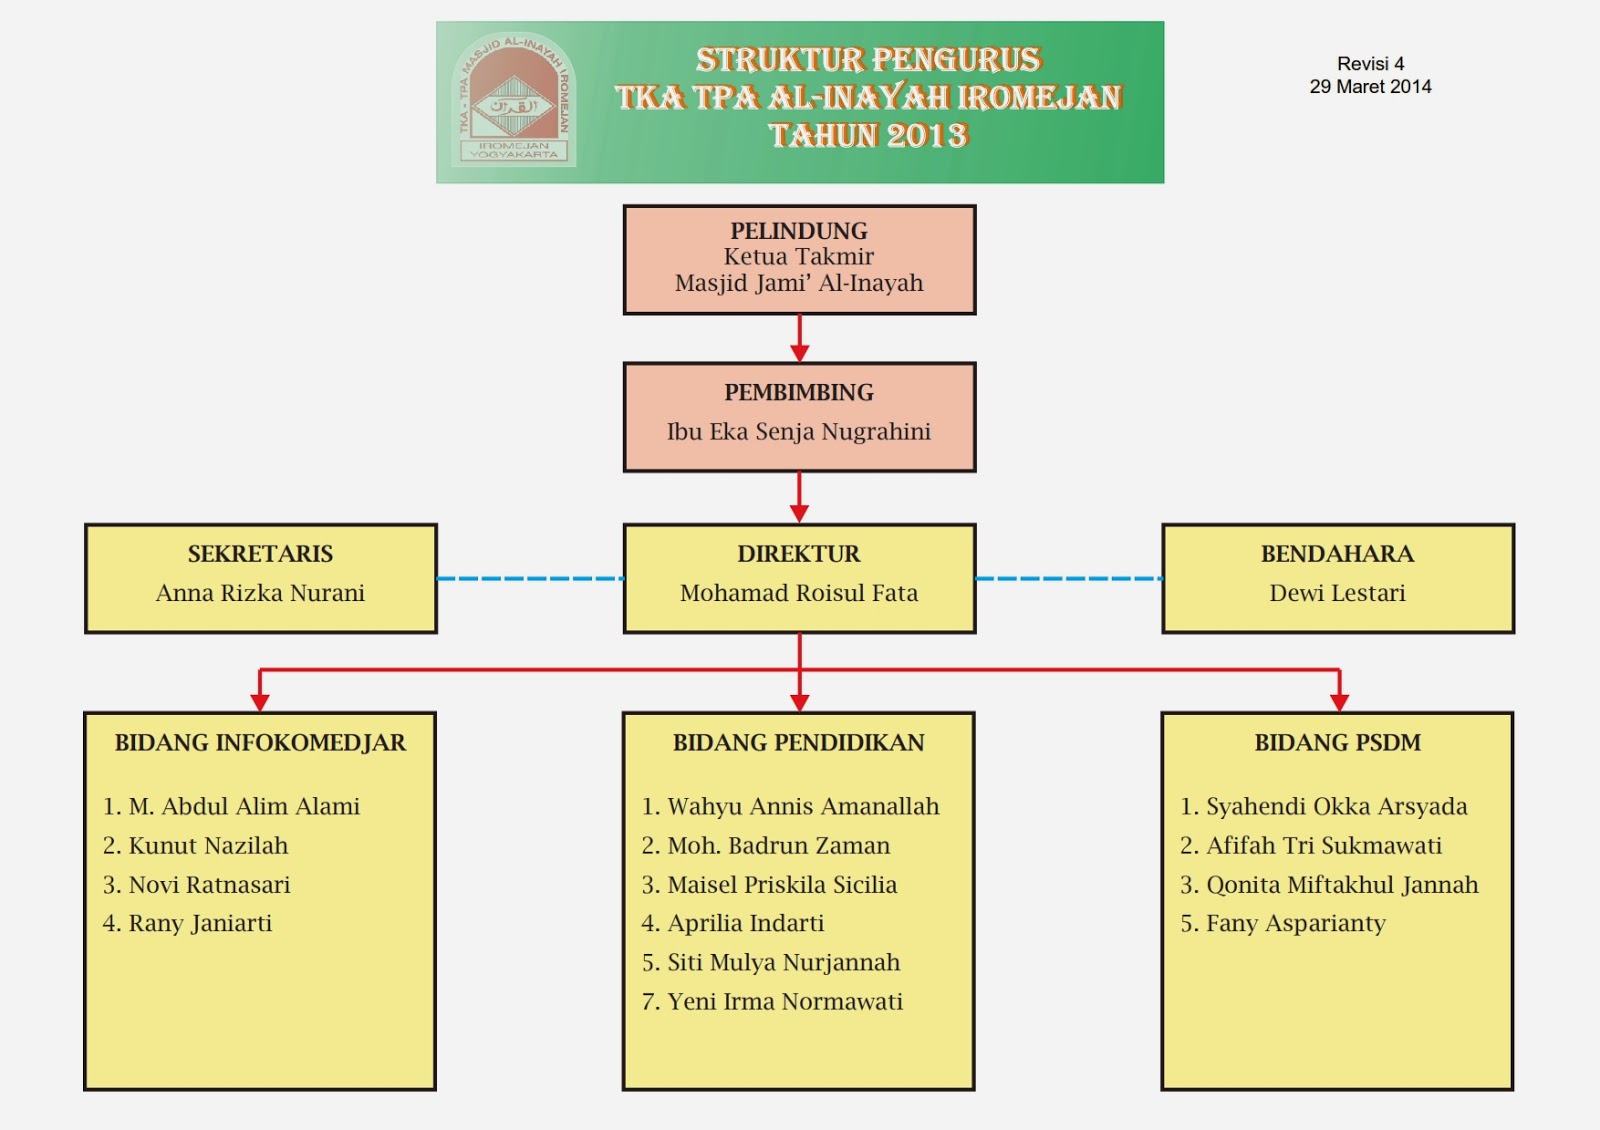 TKA/TPA AL-INAYAH IROMEJAN: Struktur Pengurus TPA 2013/2014